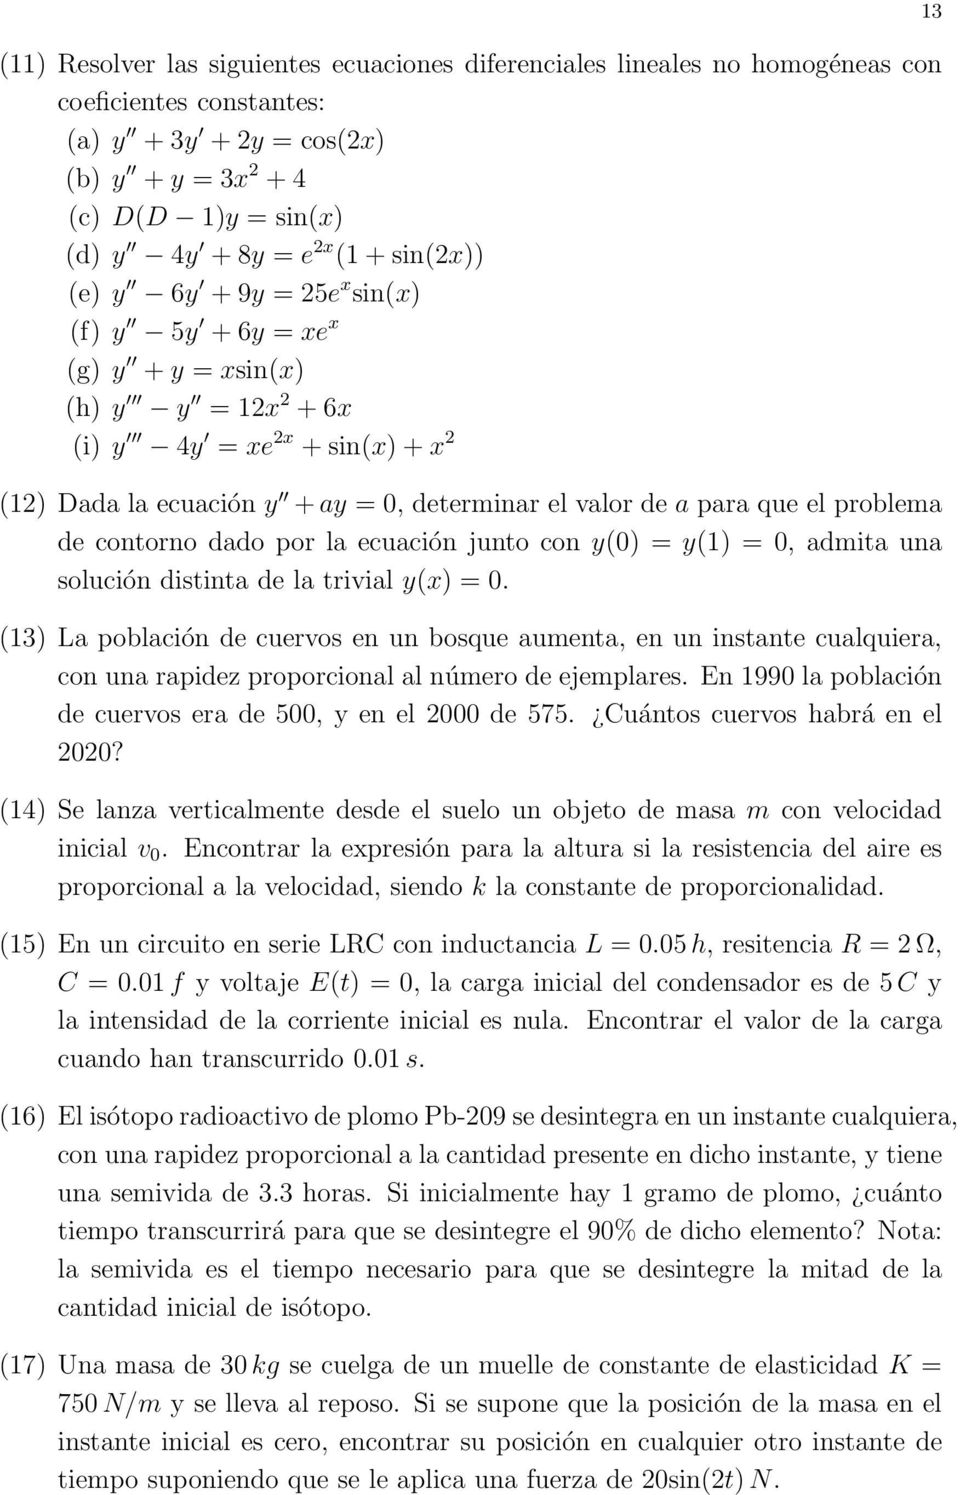 que el problema de contorno dado por la ecuación junto con y(0) = y(1) = 0, admita una solución distinta de la trivial y(x) = 0.